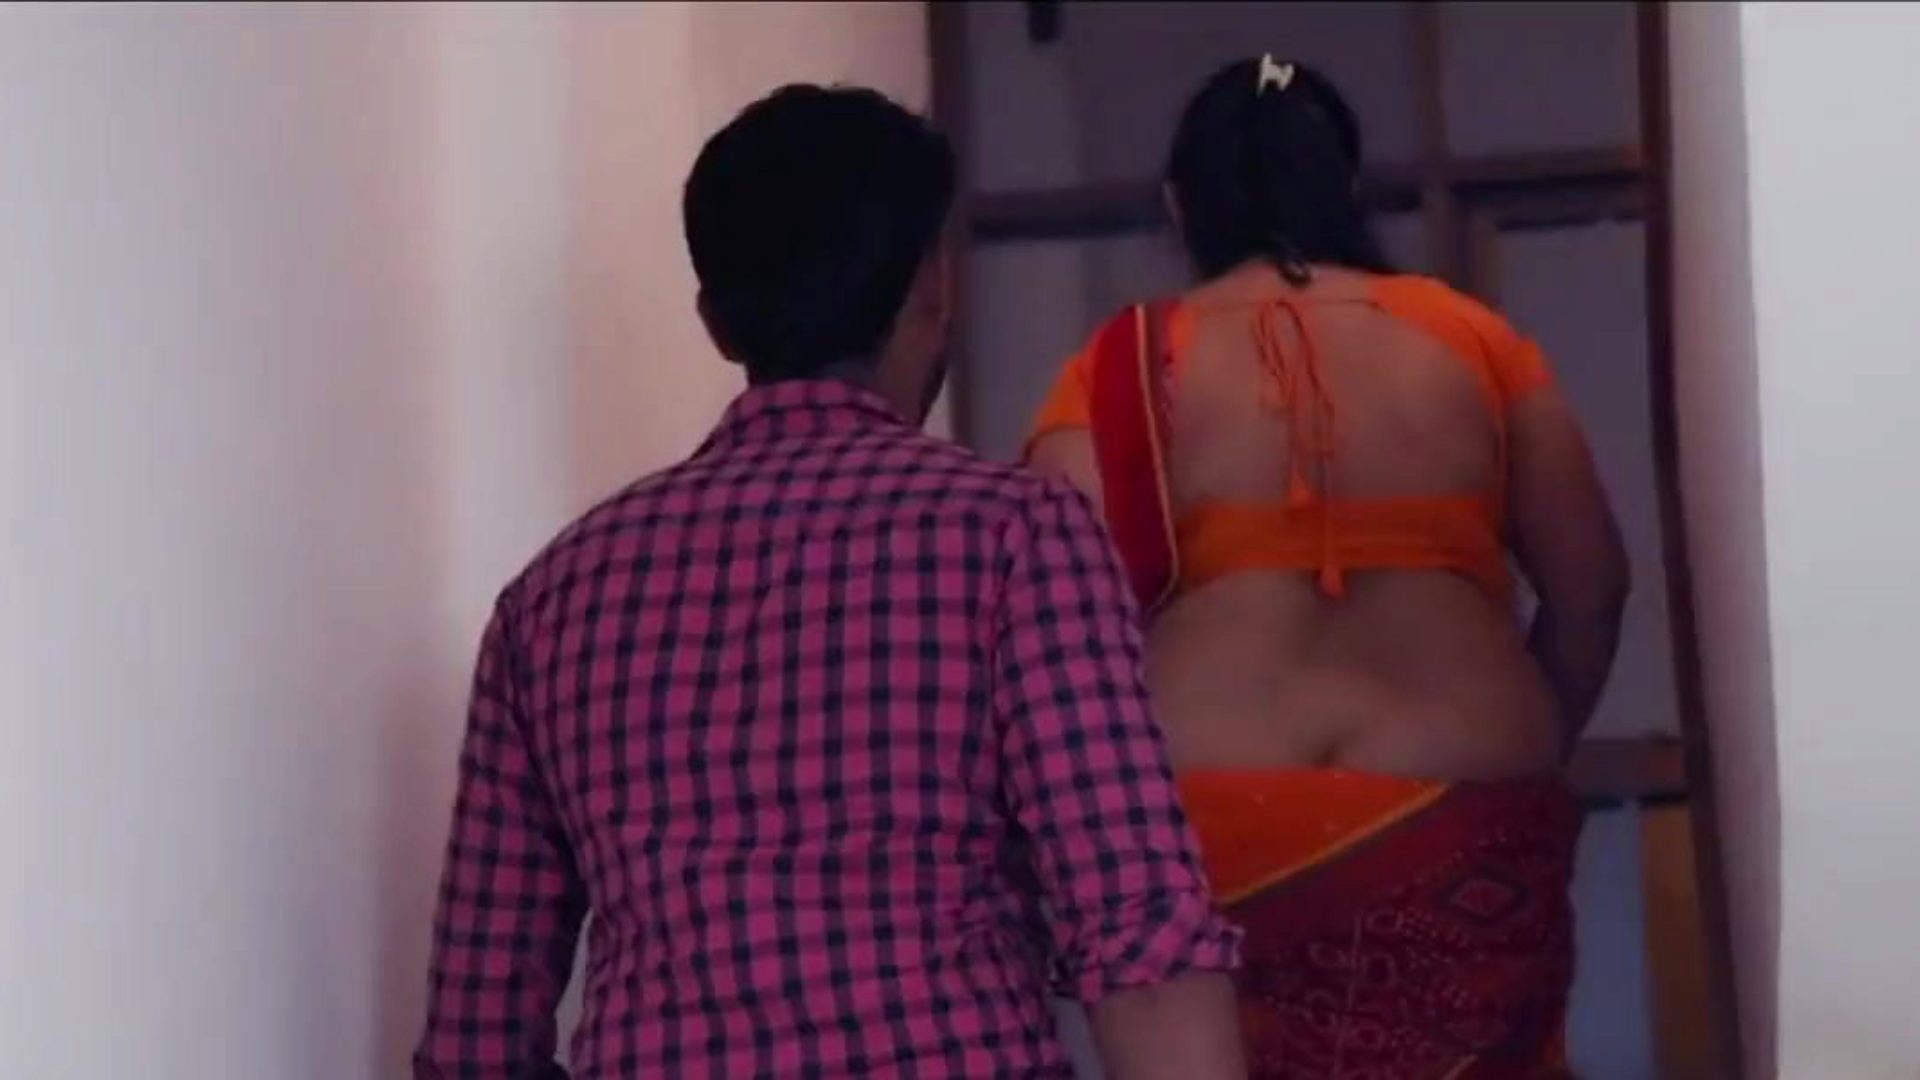 tia kanchan - e5 - clipe de dois pornôs indianos gratuitos c2: xhamster assistir tia kanchan - e5 - clipe de dois filmes no xhamster, a maior página da web de tubo de sexo em hd com toneladas de danças sensuais indianas gratuitas e filmes pornôs gratuitos de tia